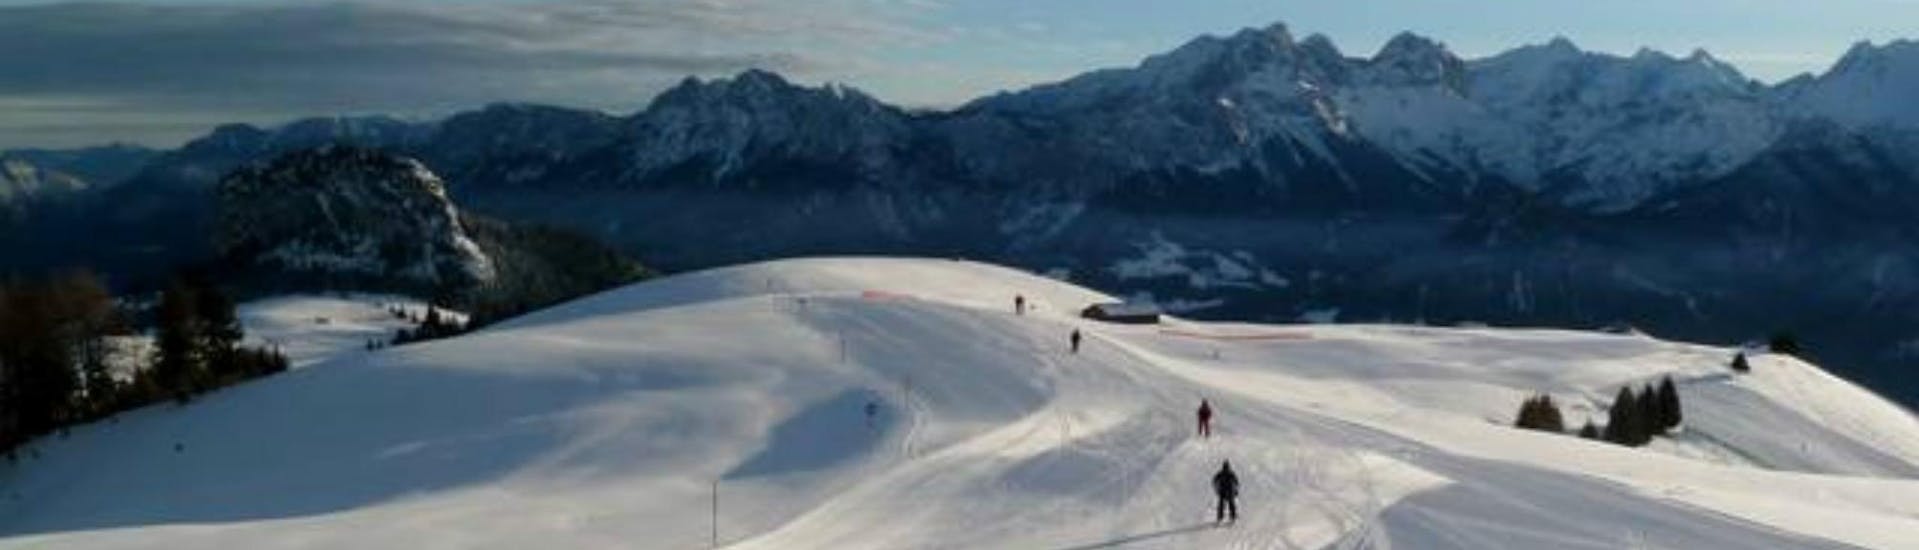 Ausblick auf die sonnige Berglandschaft beim Skifahren lernen mit einer Skischule im Skigebiet Loser-Altaussee.